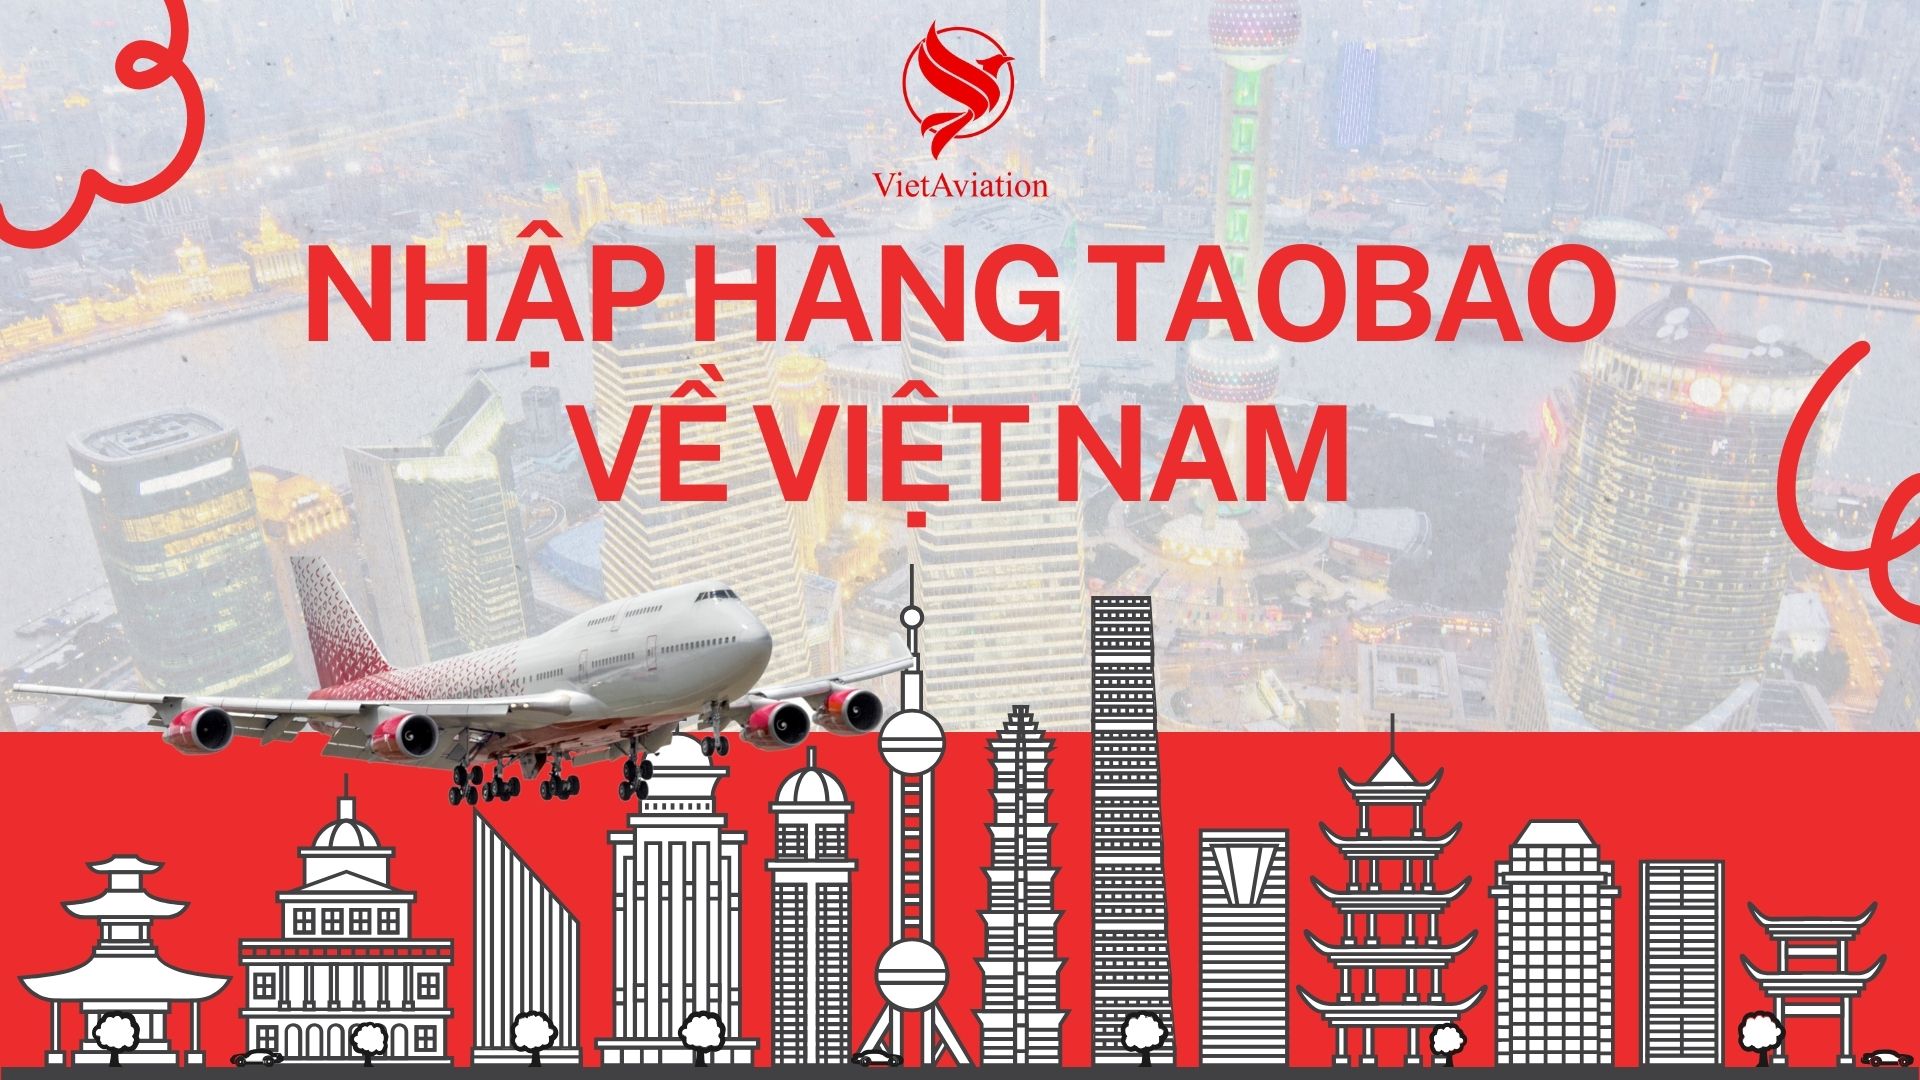 Nhập hàng taobao về Việt Nam